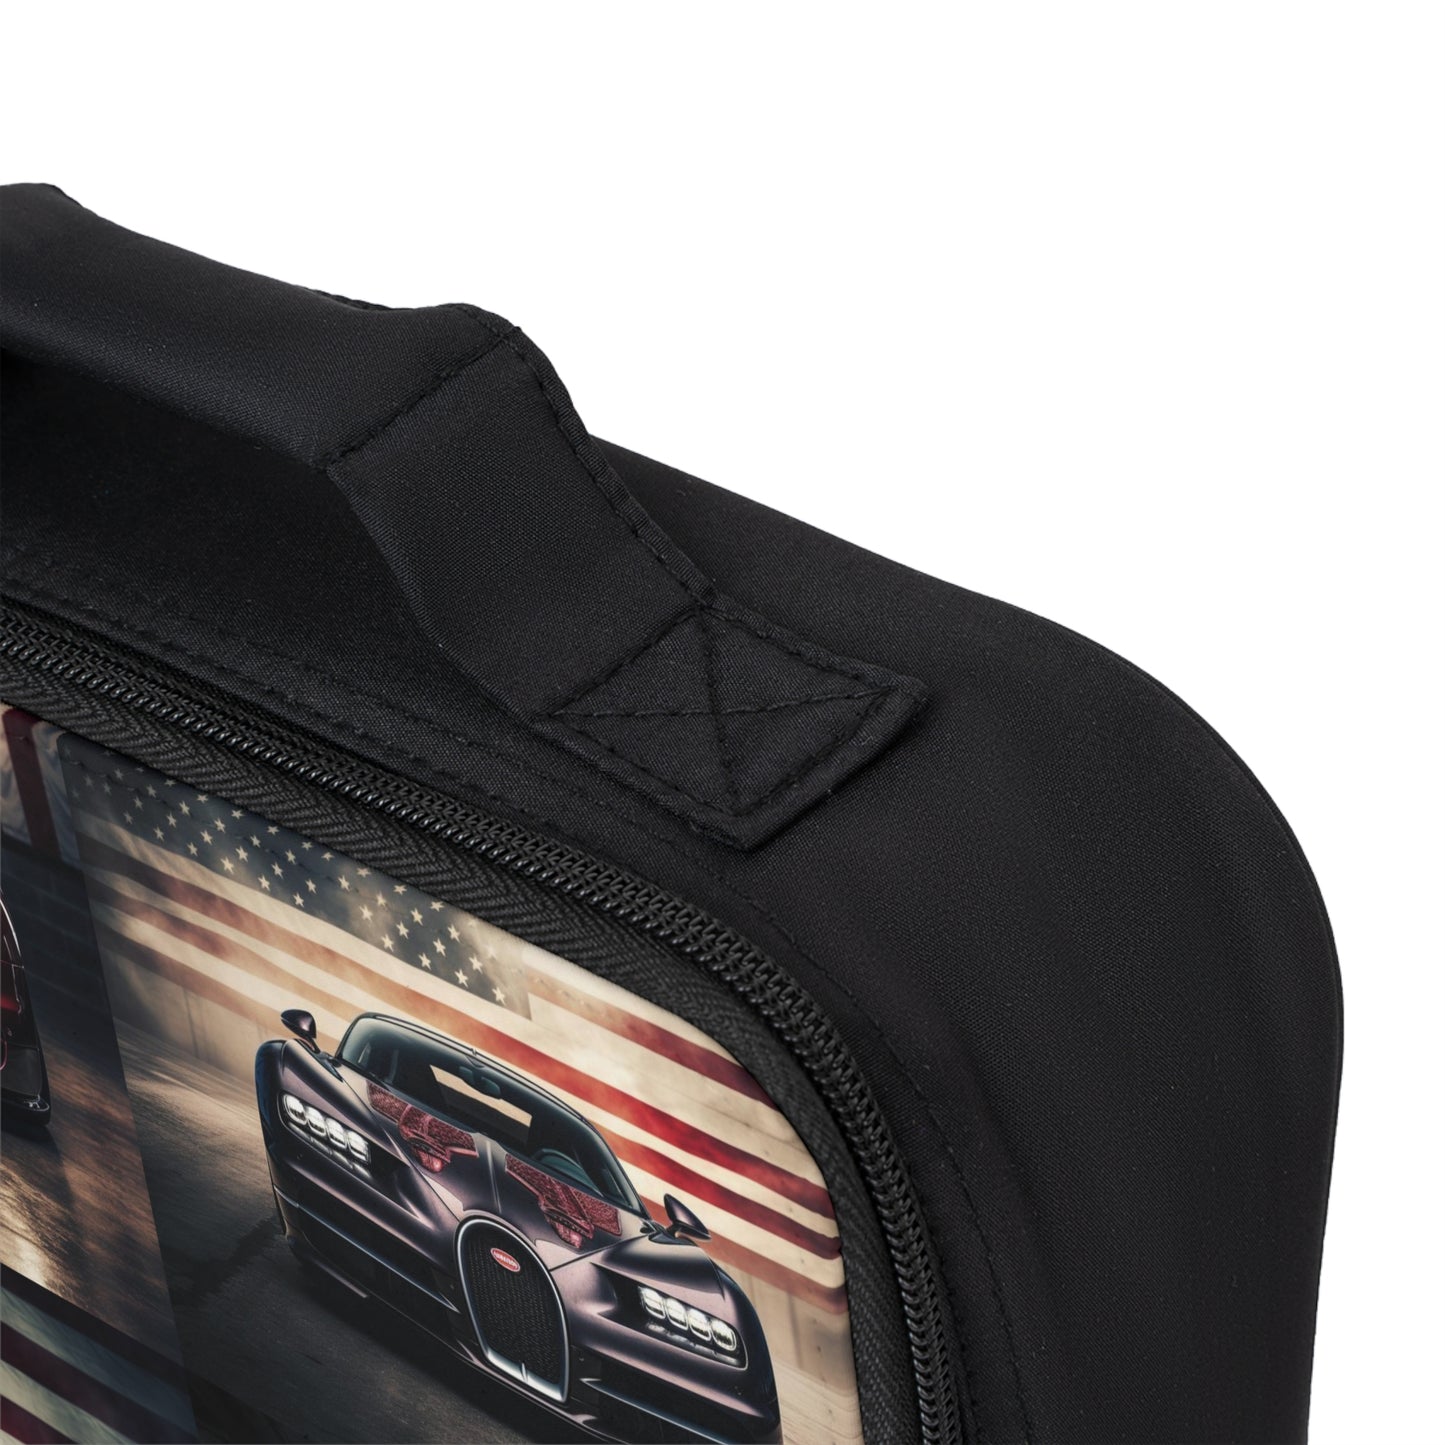 Lunch Bag American Flag Background Bugatti 5